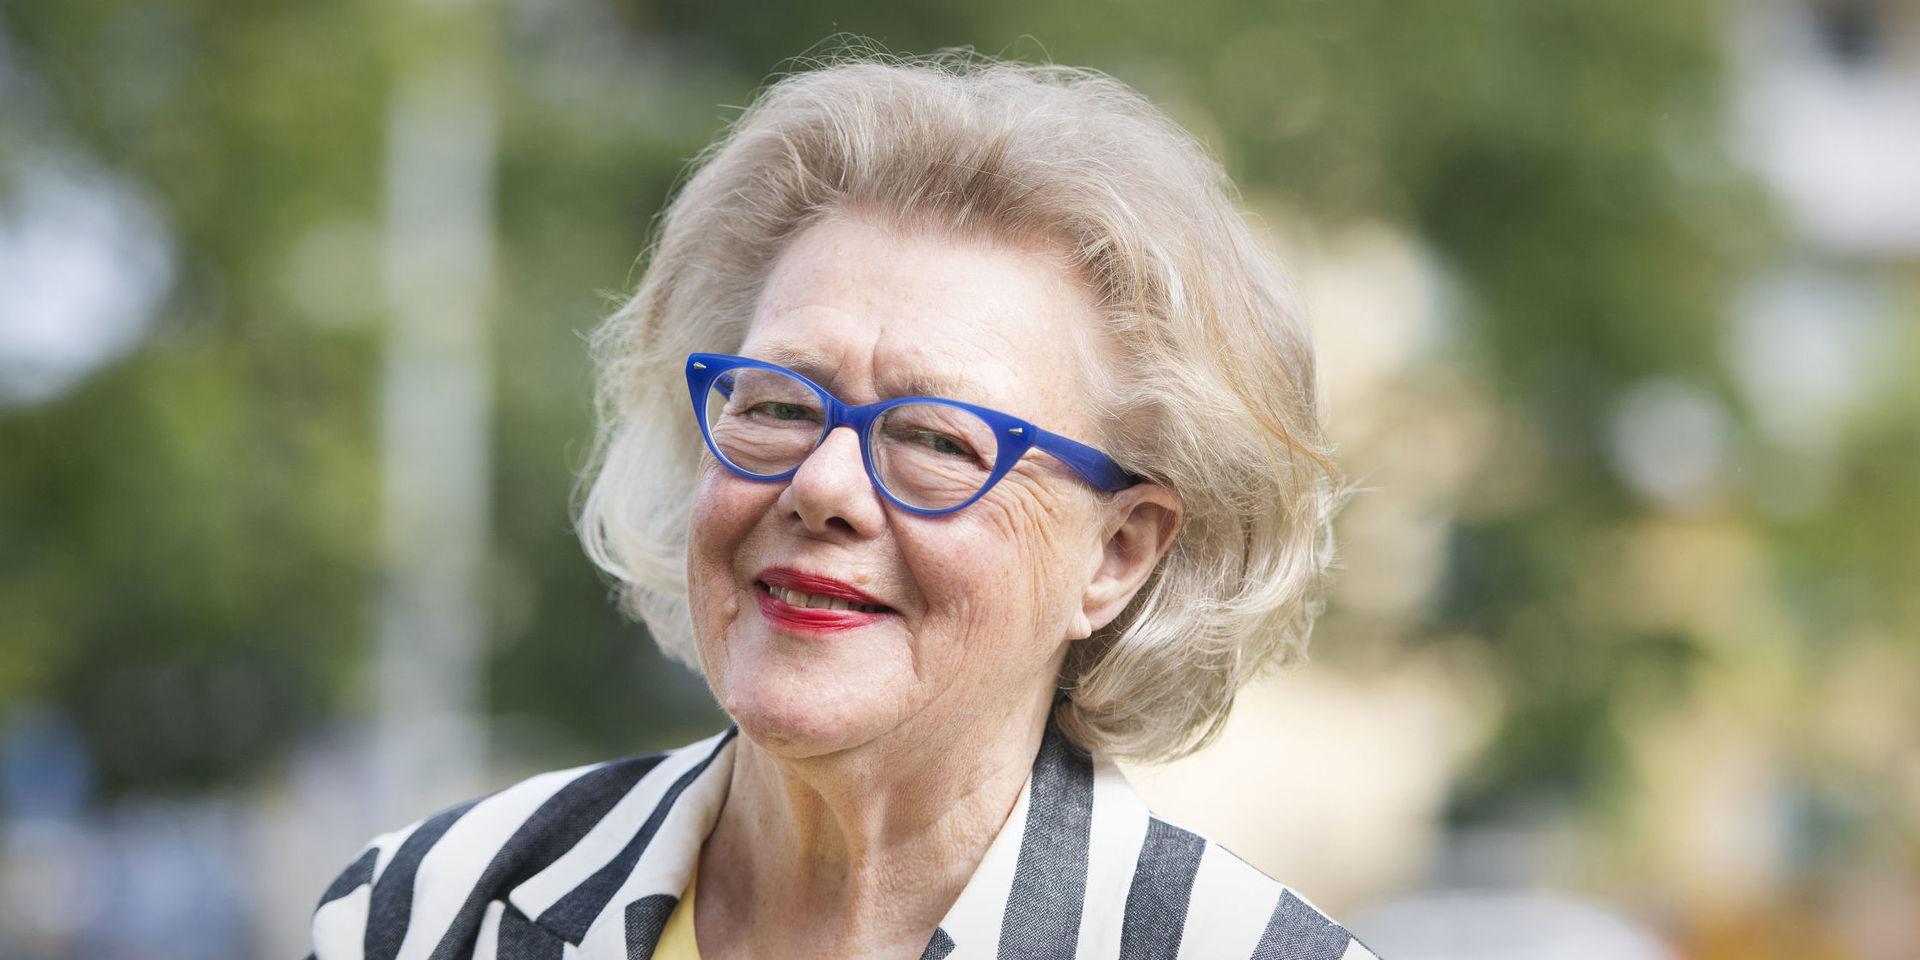 Birgitta Rasmusson har en lång karriär bakom sig men det är tv-succén ”Hela Sverige bakar” som har gjort henne rikskänd. ”Det är märkligt att jag skulle bli tv-kändis på gamla dagar”, säger hon inför sin 80-årsdag.